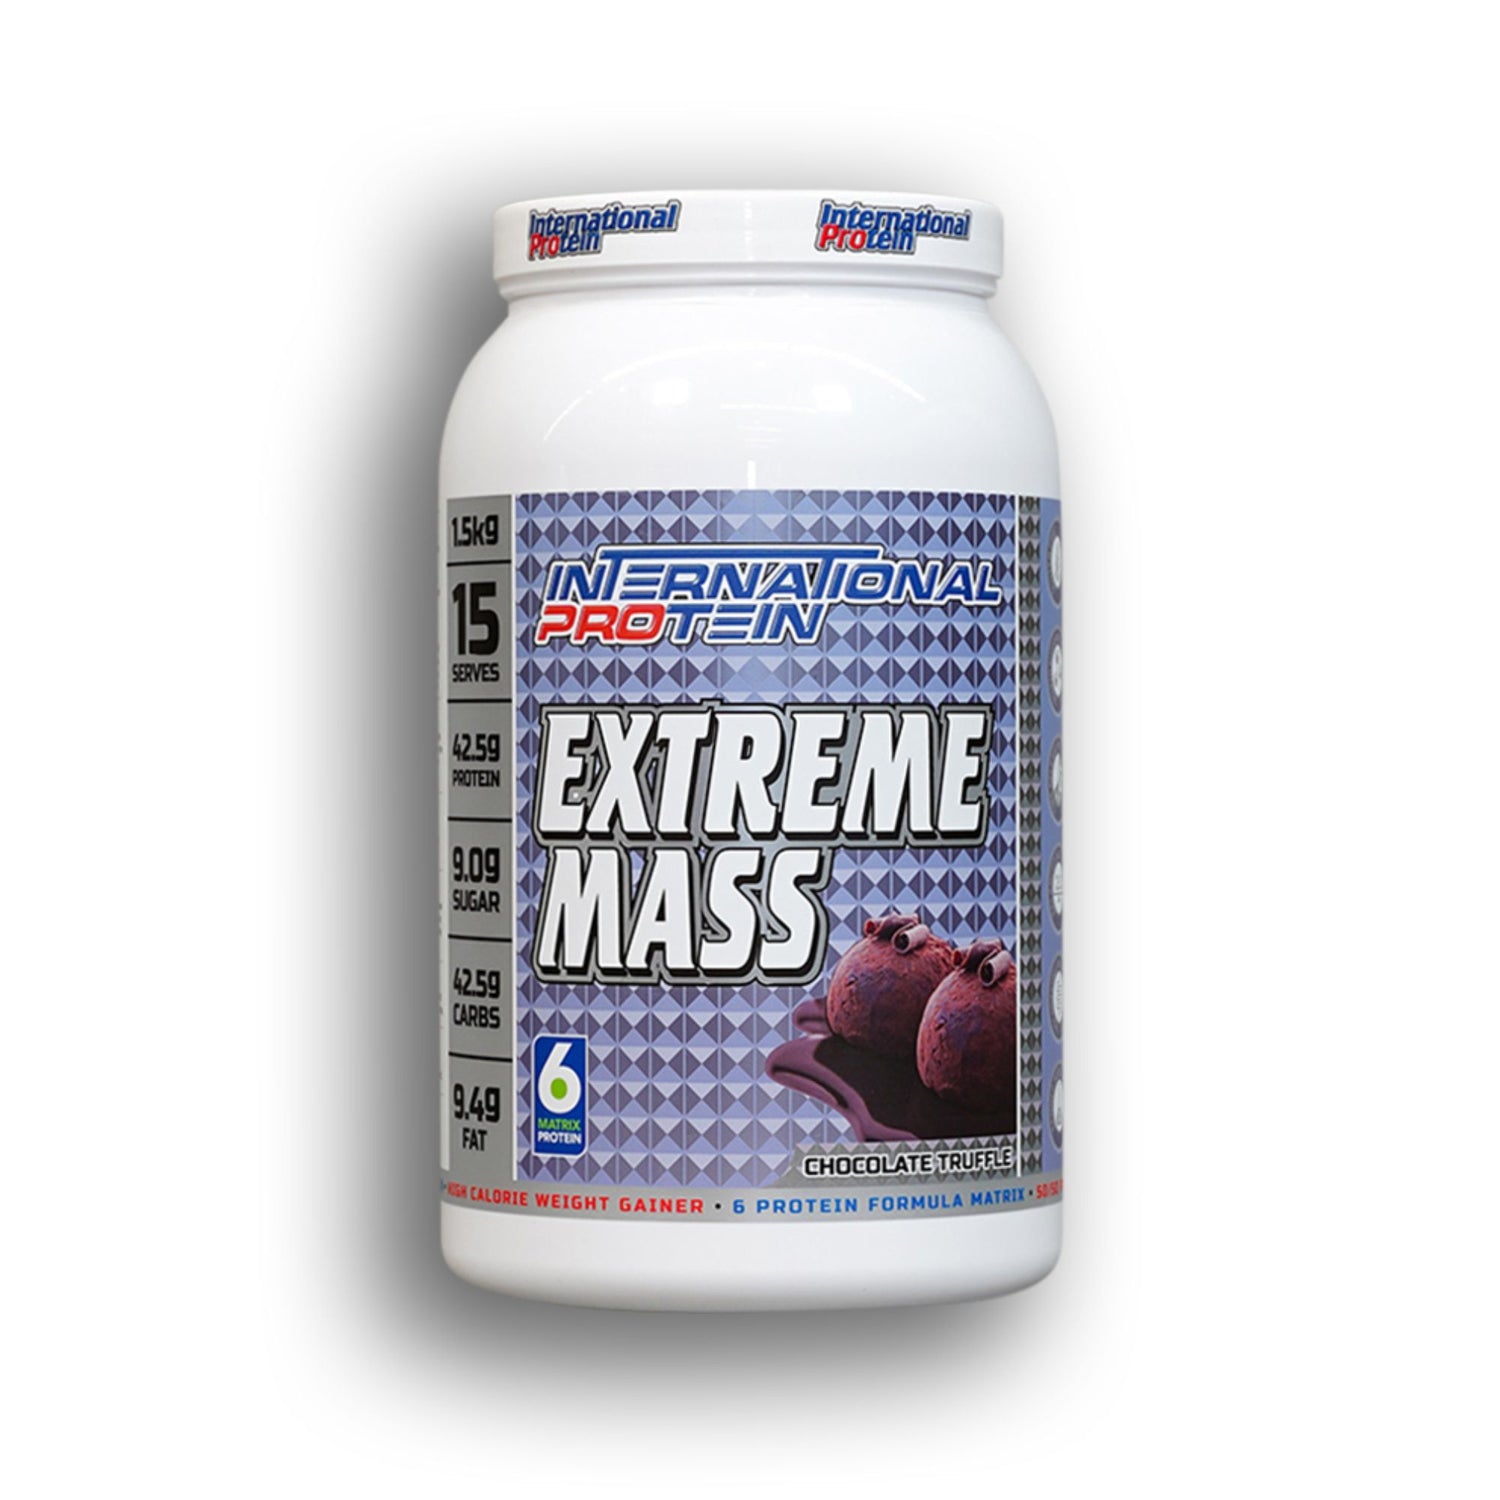 International Protein Extreme Mass Protein Powder Mass Gainer